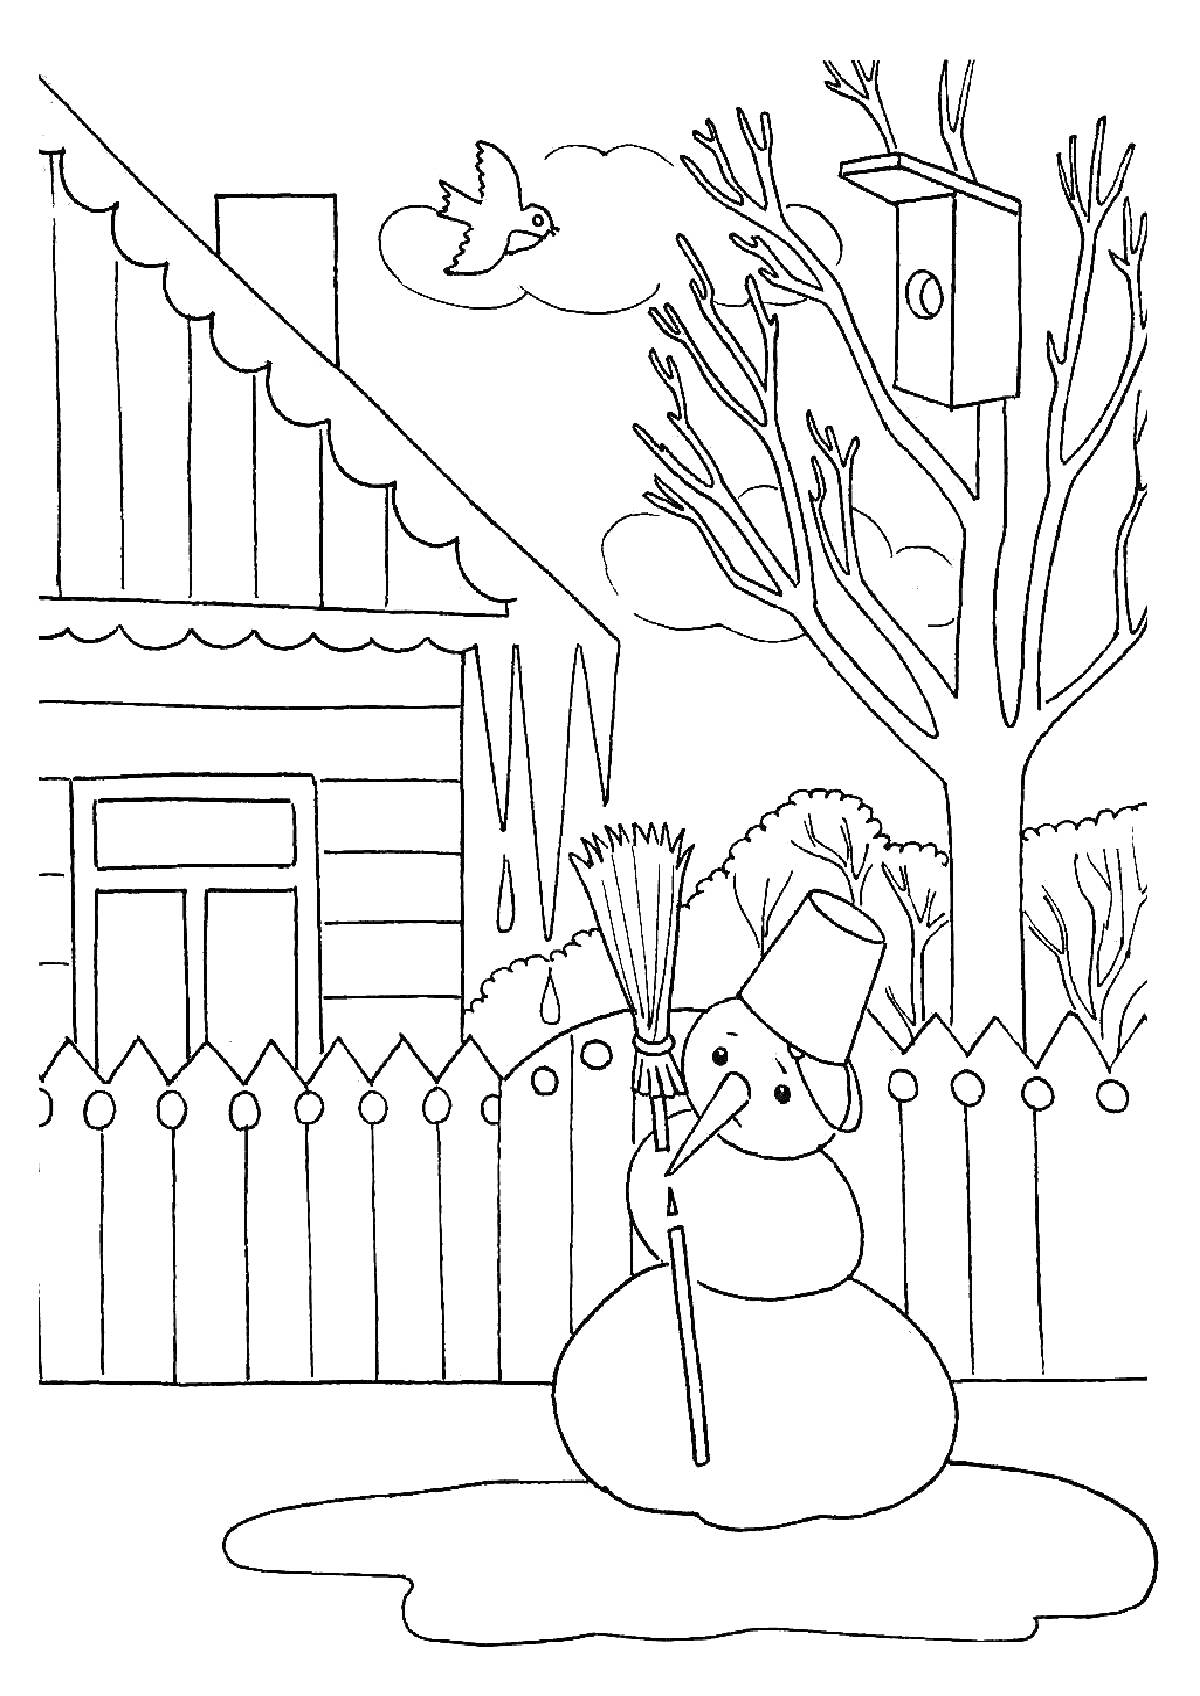 Раскраска Весенняя сцена во дворе с тающим снеговиком, деревом с птичьим домиком, птицей в полете и домом на заднем плане